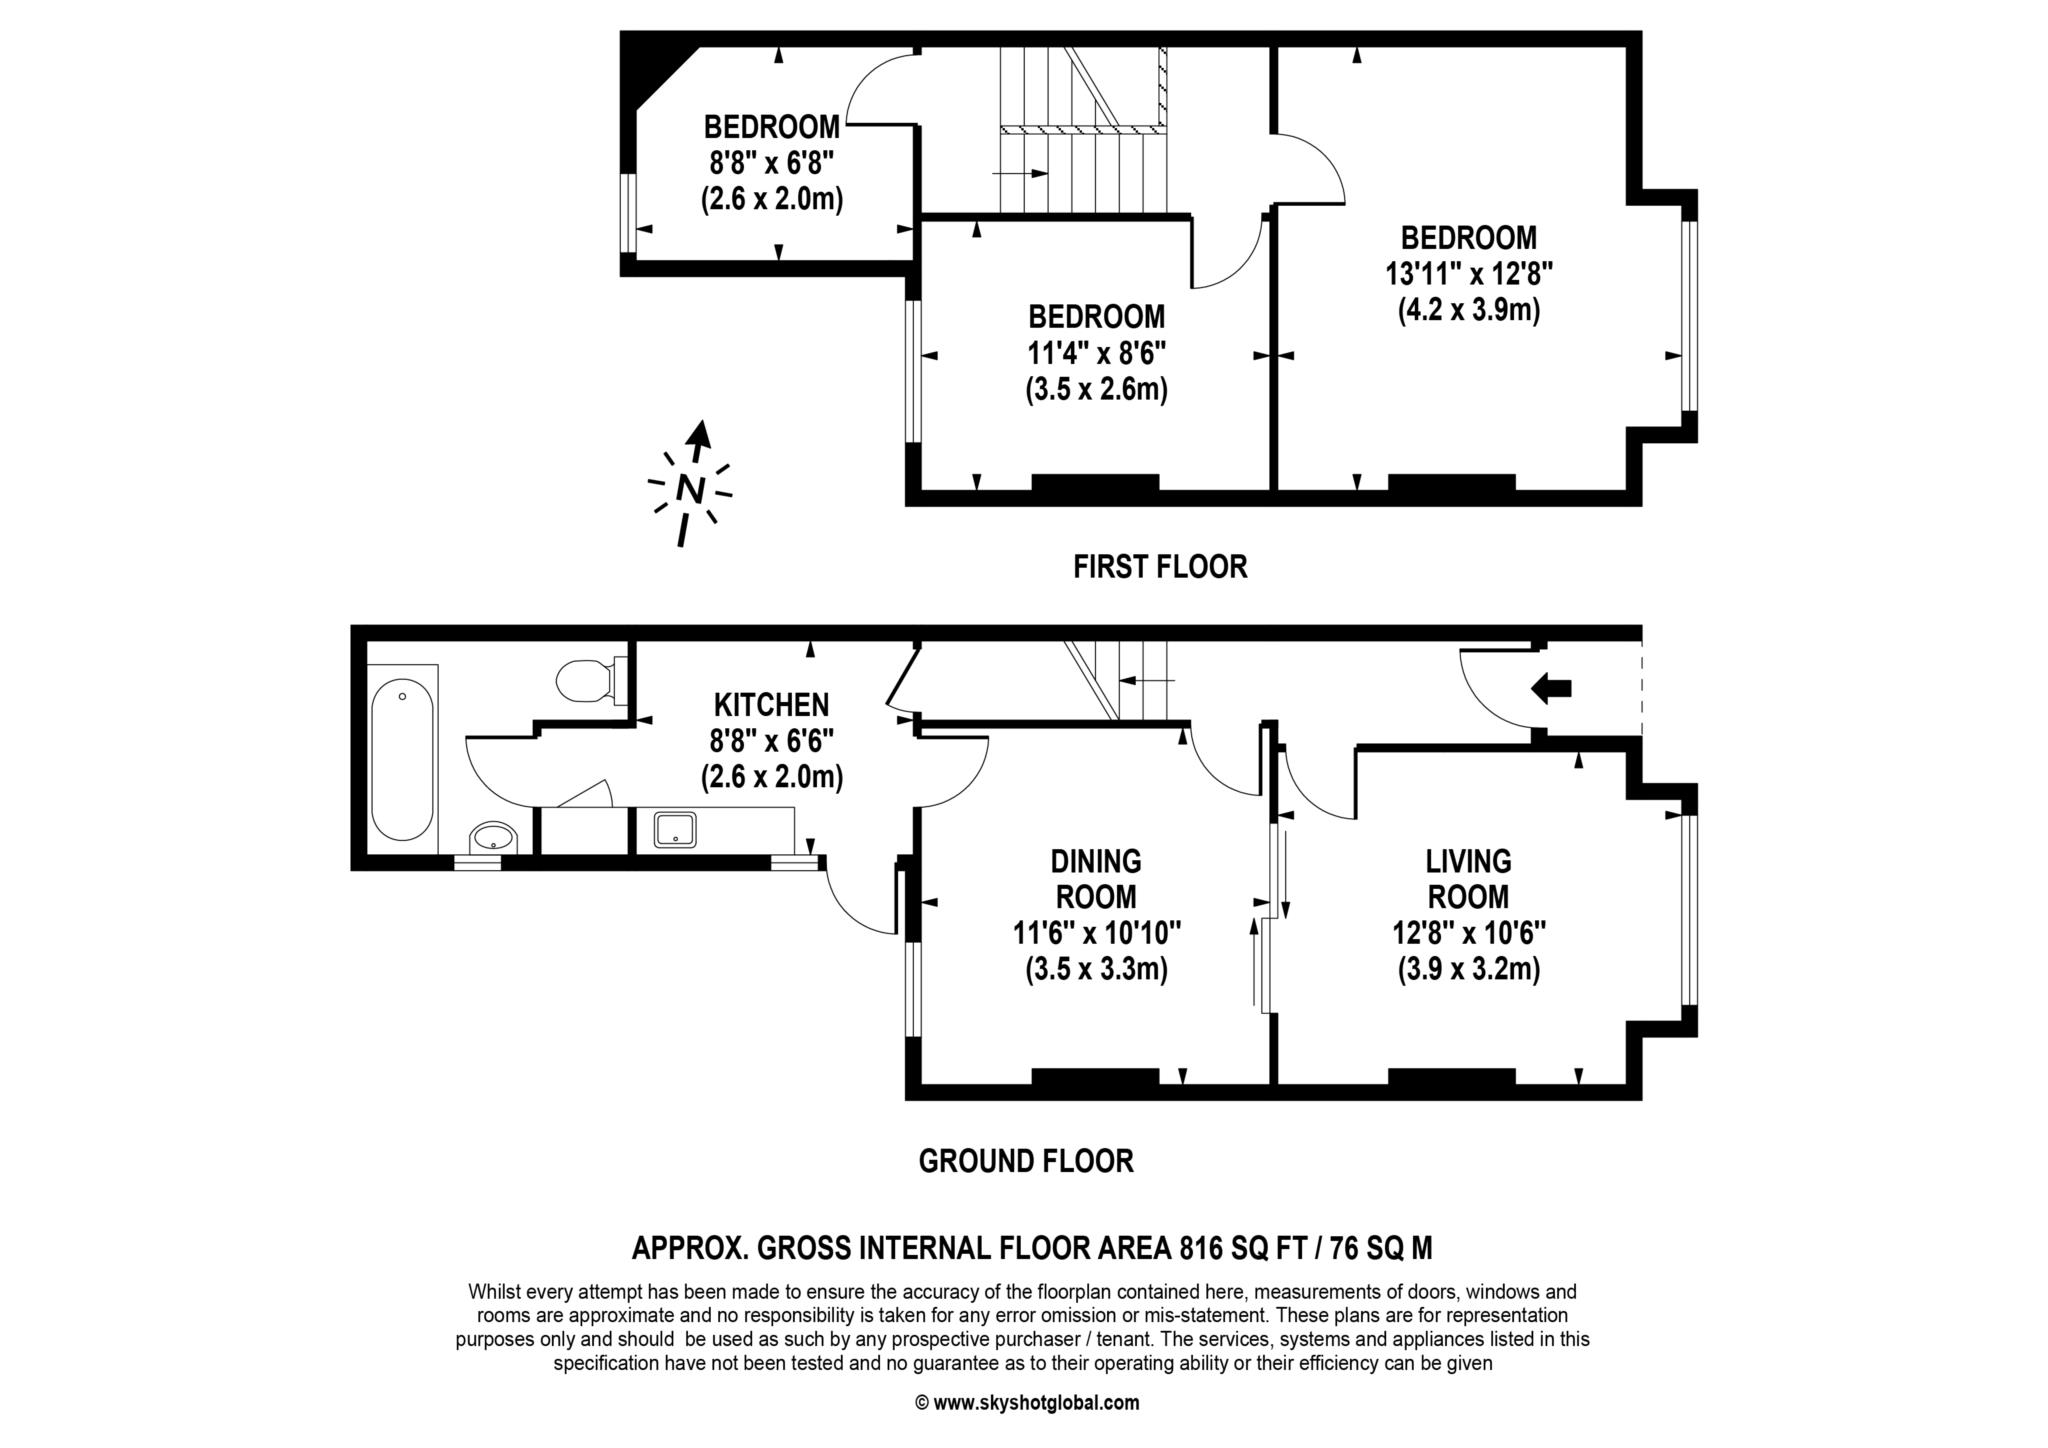 Floorplan - 3 Bedroom Terrace